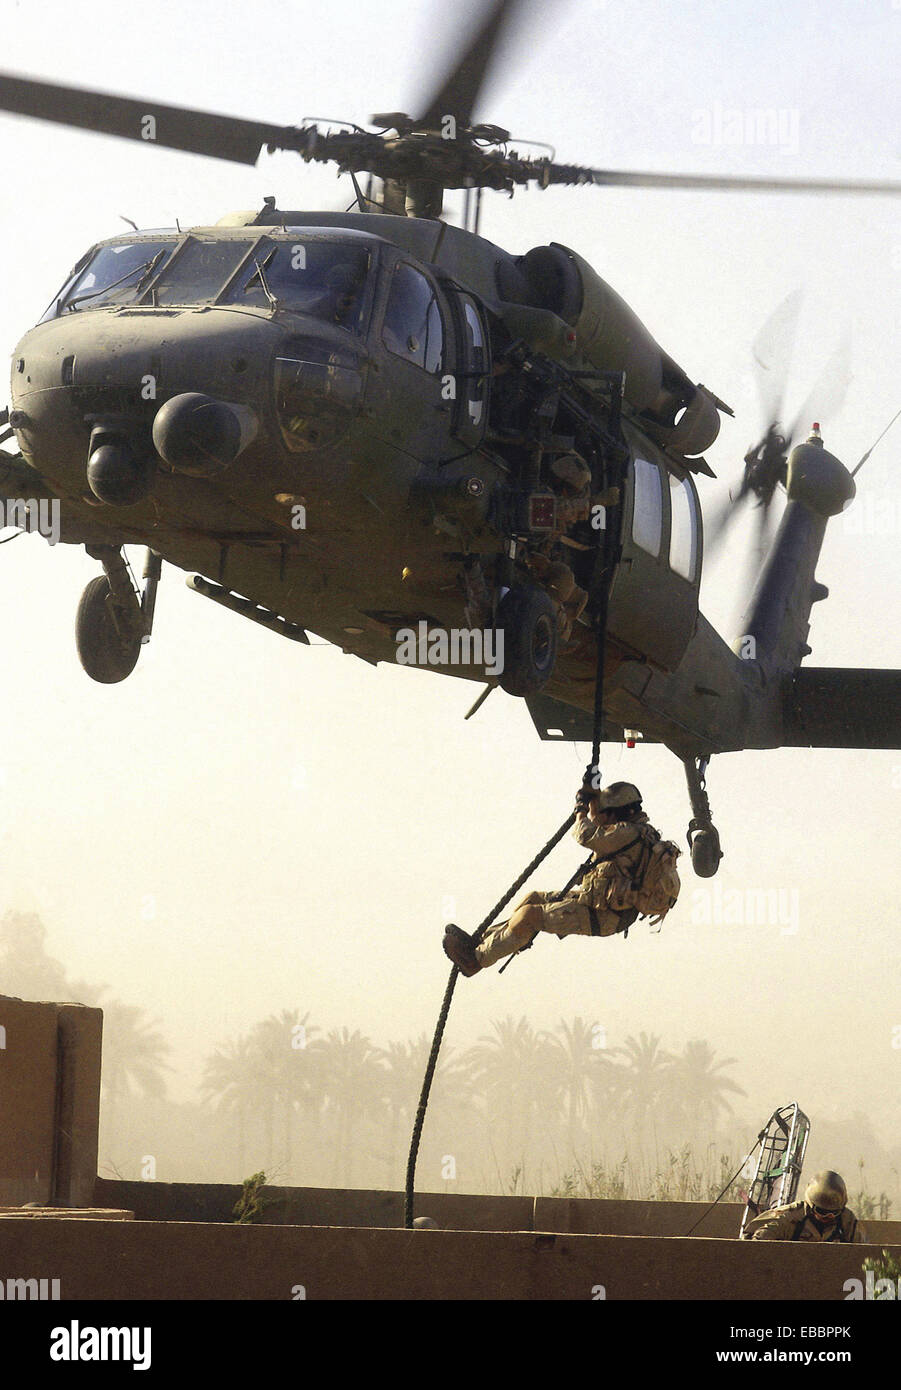 OPERATION IRAQI FREEDOM - ein Pararescueman beendet ein HH-60 Pavehawk während einer stokes Wurf Extraktion eines Überlebenden während einer Stockfoto